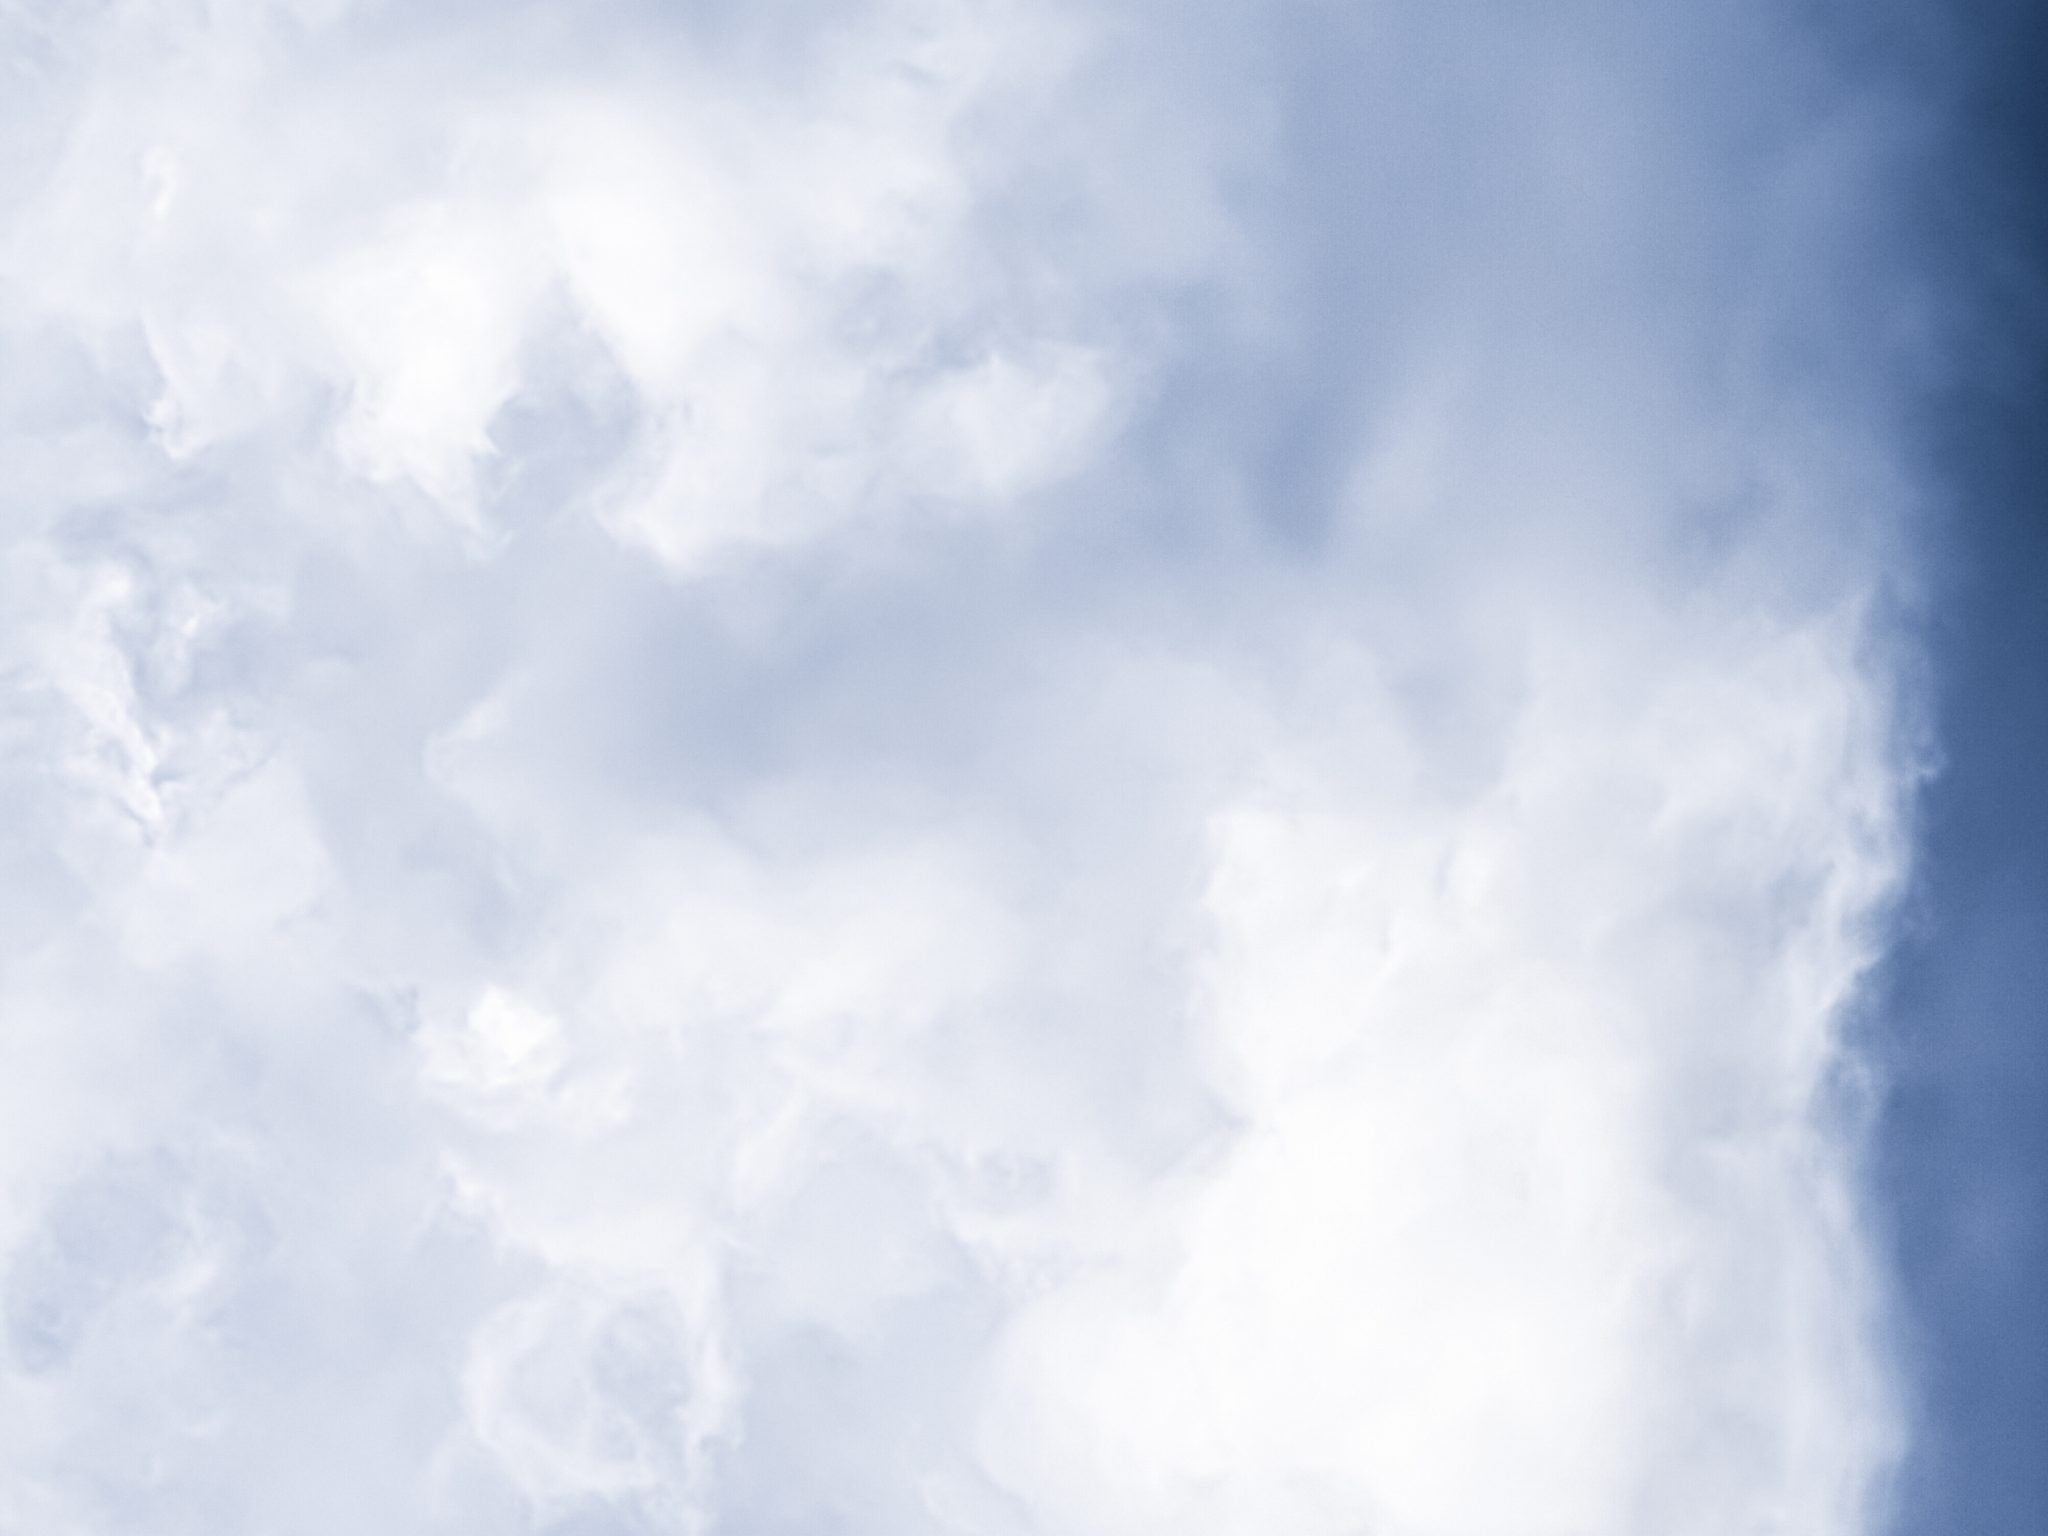 2048x1536 wallpaper Minimalist Blue Sky Cloudy iPad Wallpaper 2048x1536 pixels resolution